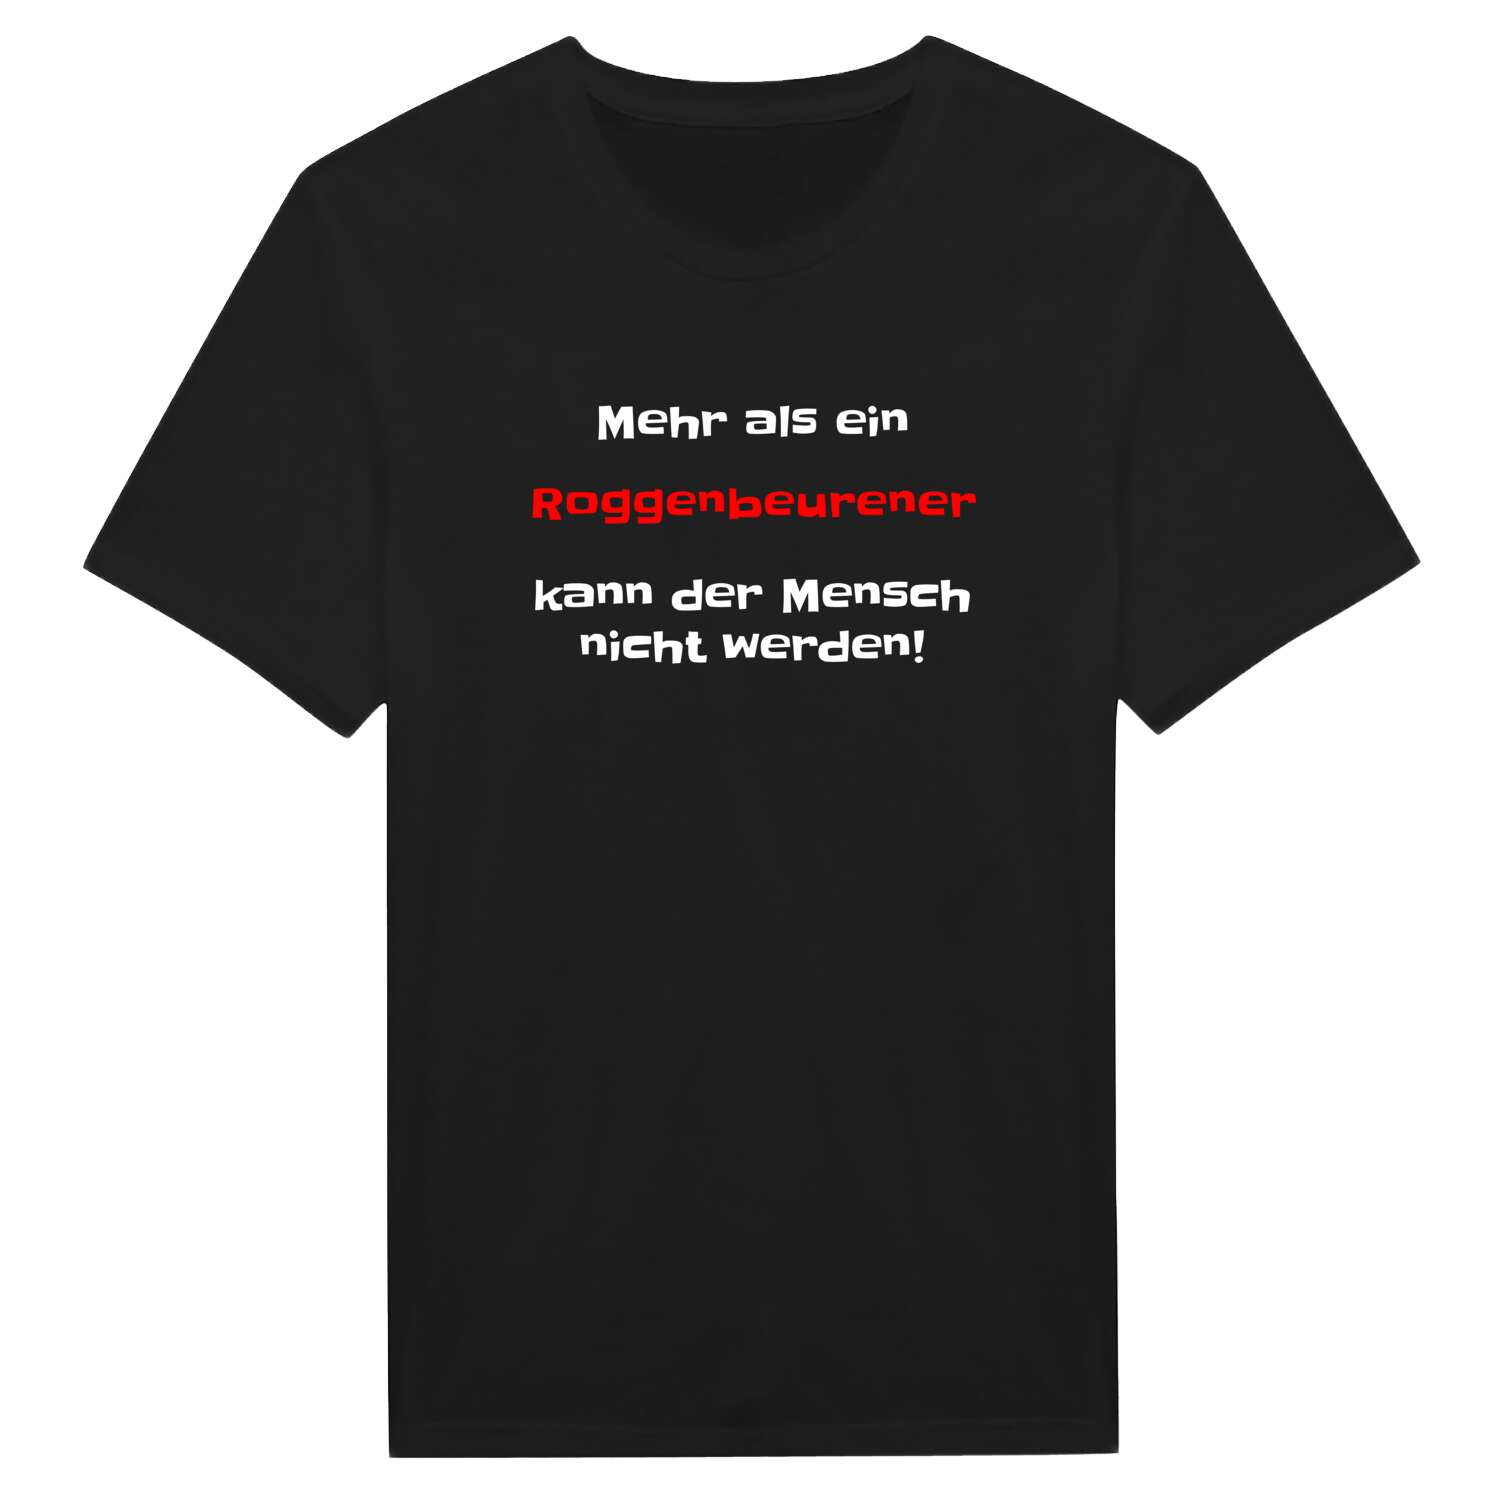 Roggenbeuren T-Shirt »Mehr als ein«